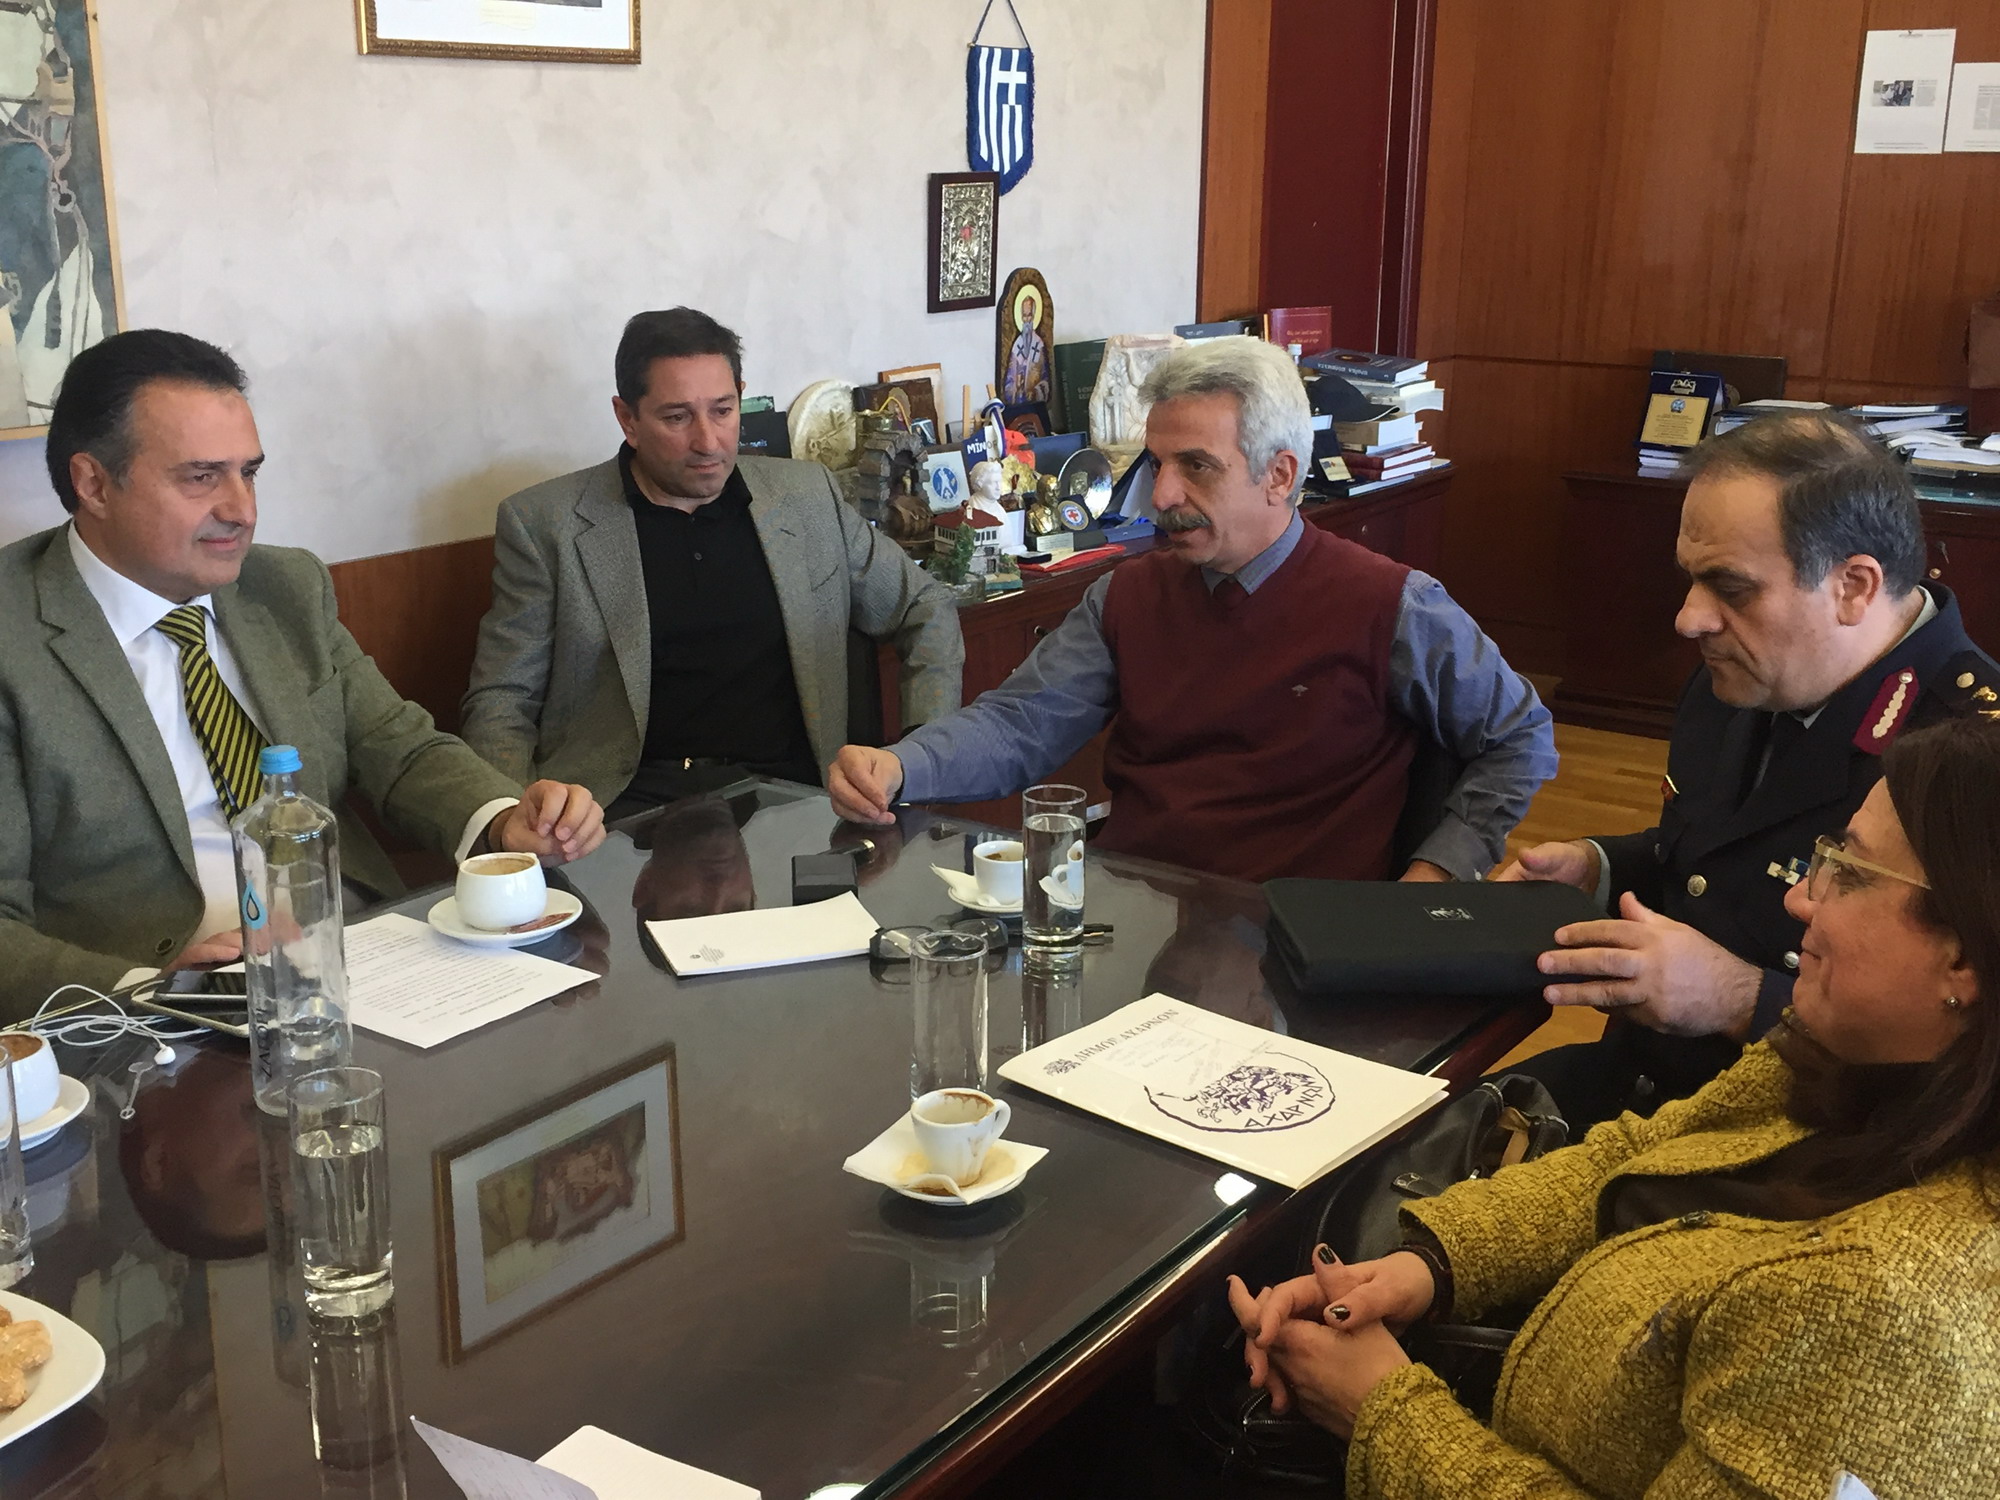 Σύσκεψη του Δημάρχου Αχαρνών και του Γενικού Γραμματέα Δημόσιας Τάξης για την παραβατικότητα στον Δήμο Αχαρνών - Φωτογραφία 3